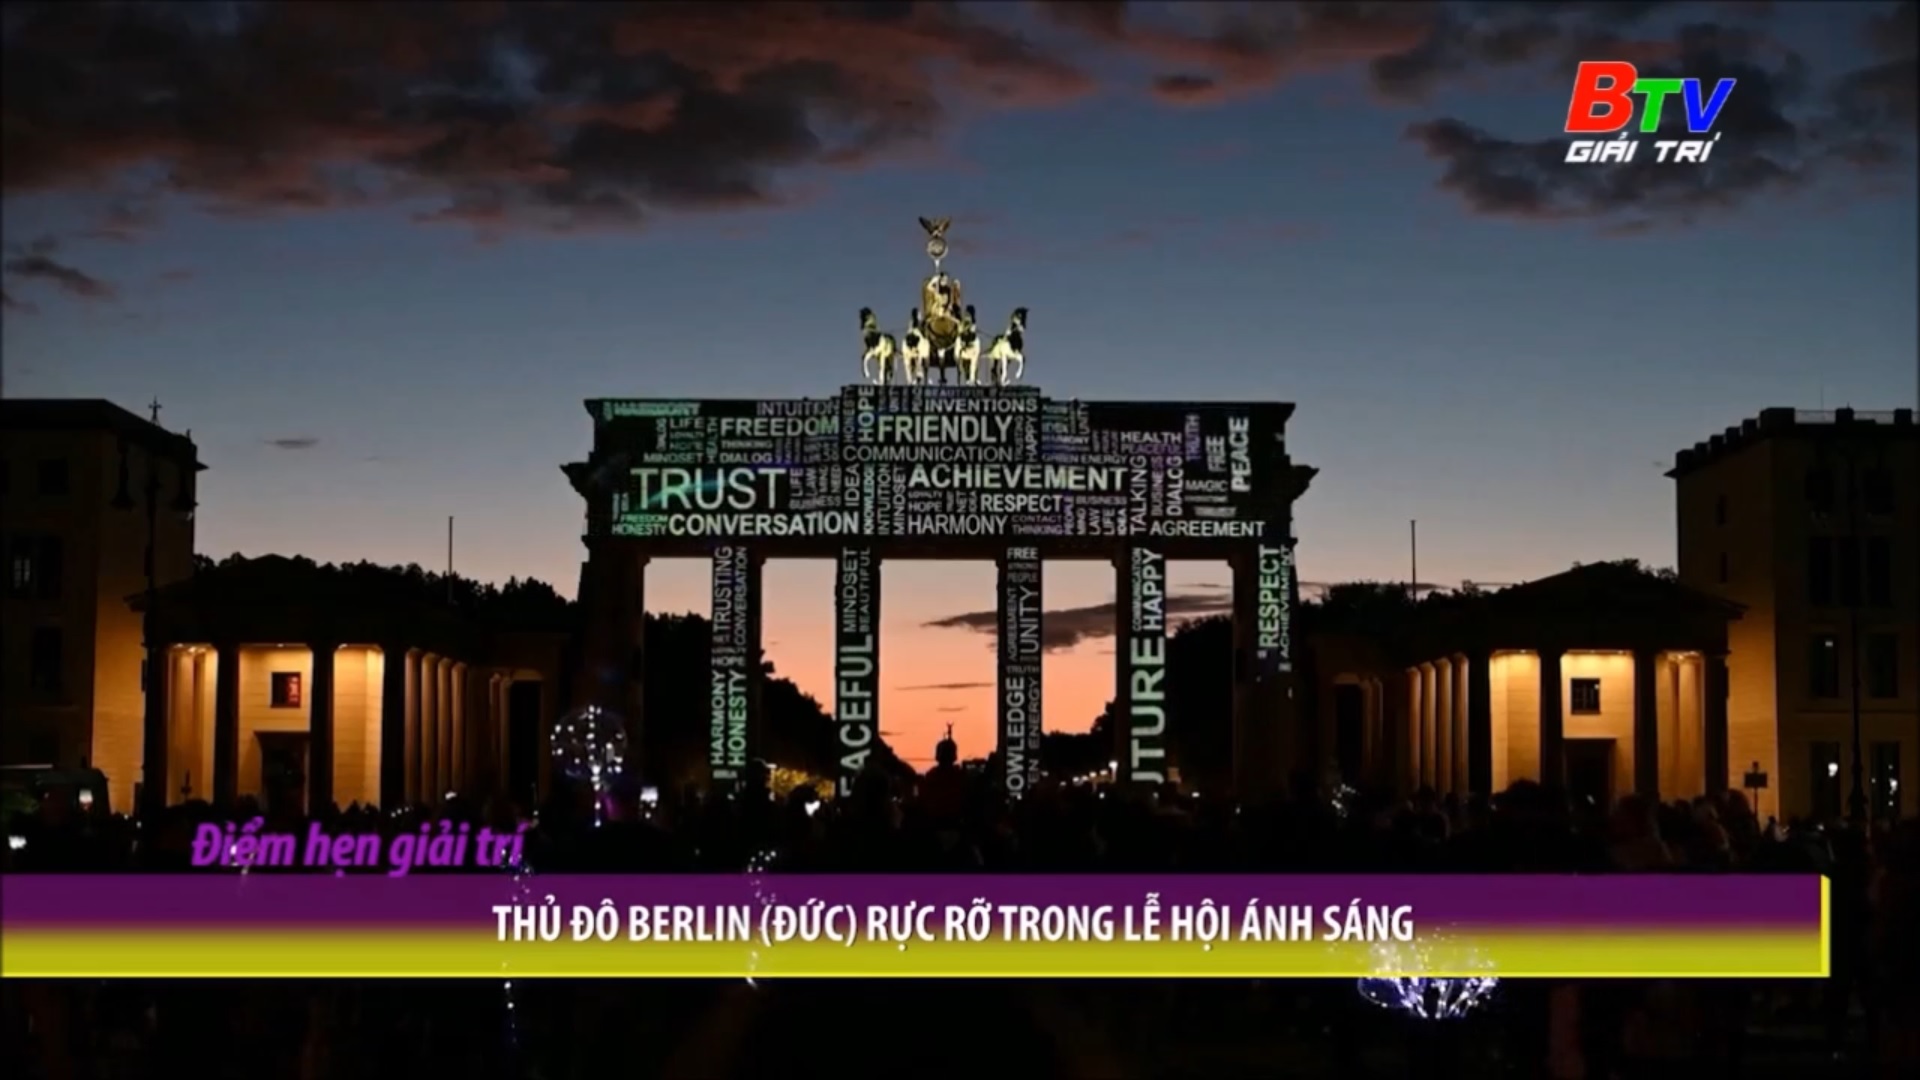 Thủ đô Berlin (Đức) rực rỡ trong lễ hội ánh sáng